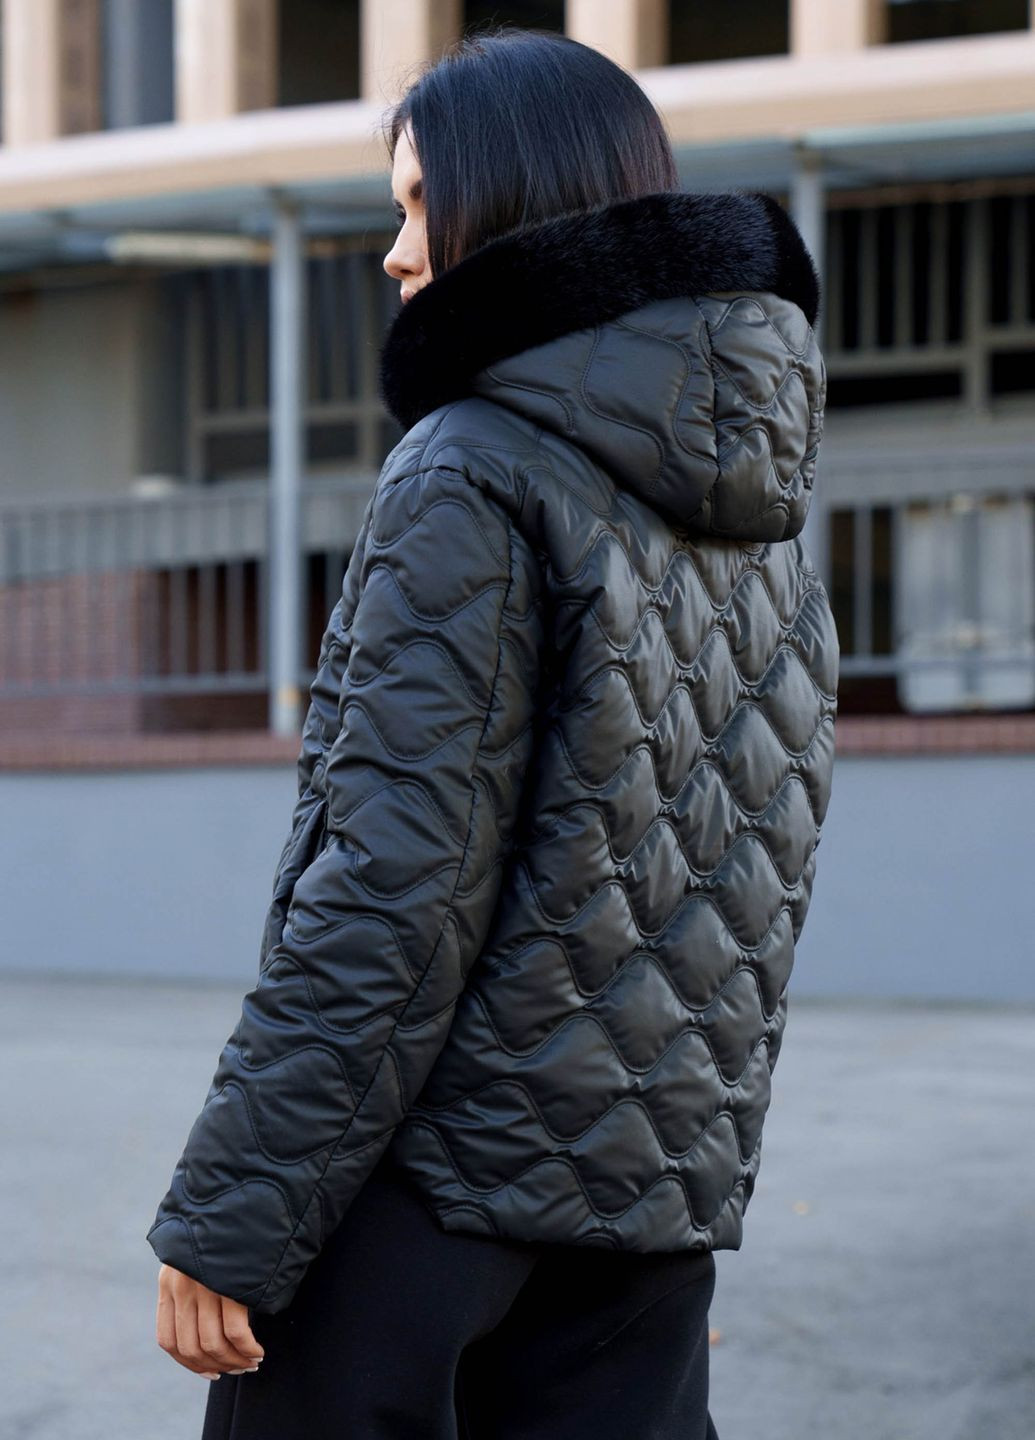 Черная зимняя стильная короткая куртка на утеплителе черного цвета Jadone Fashion Курточка